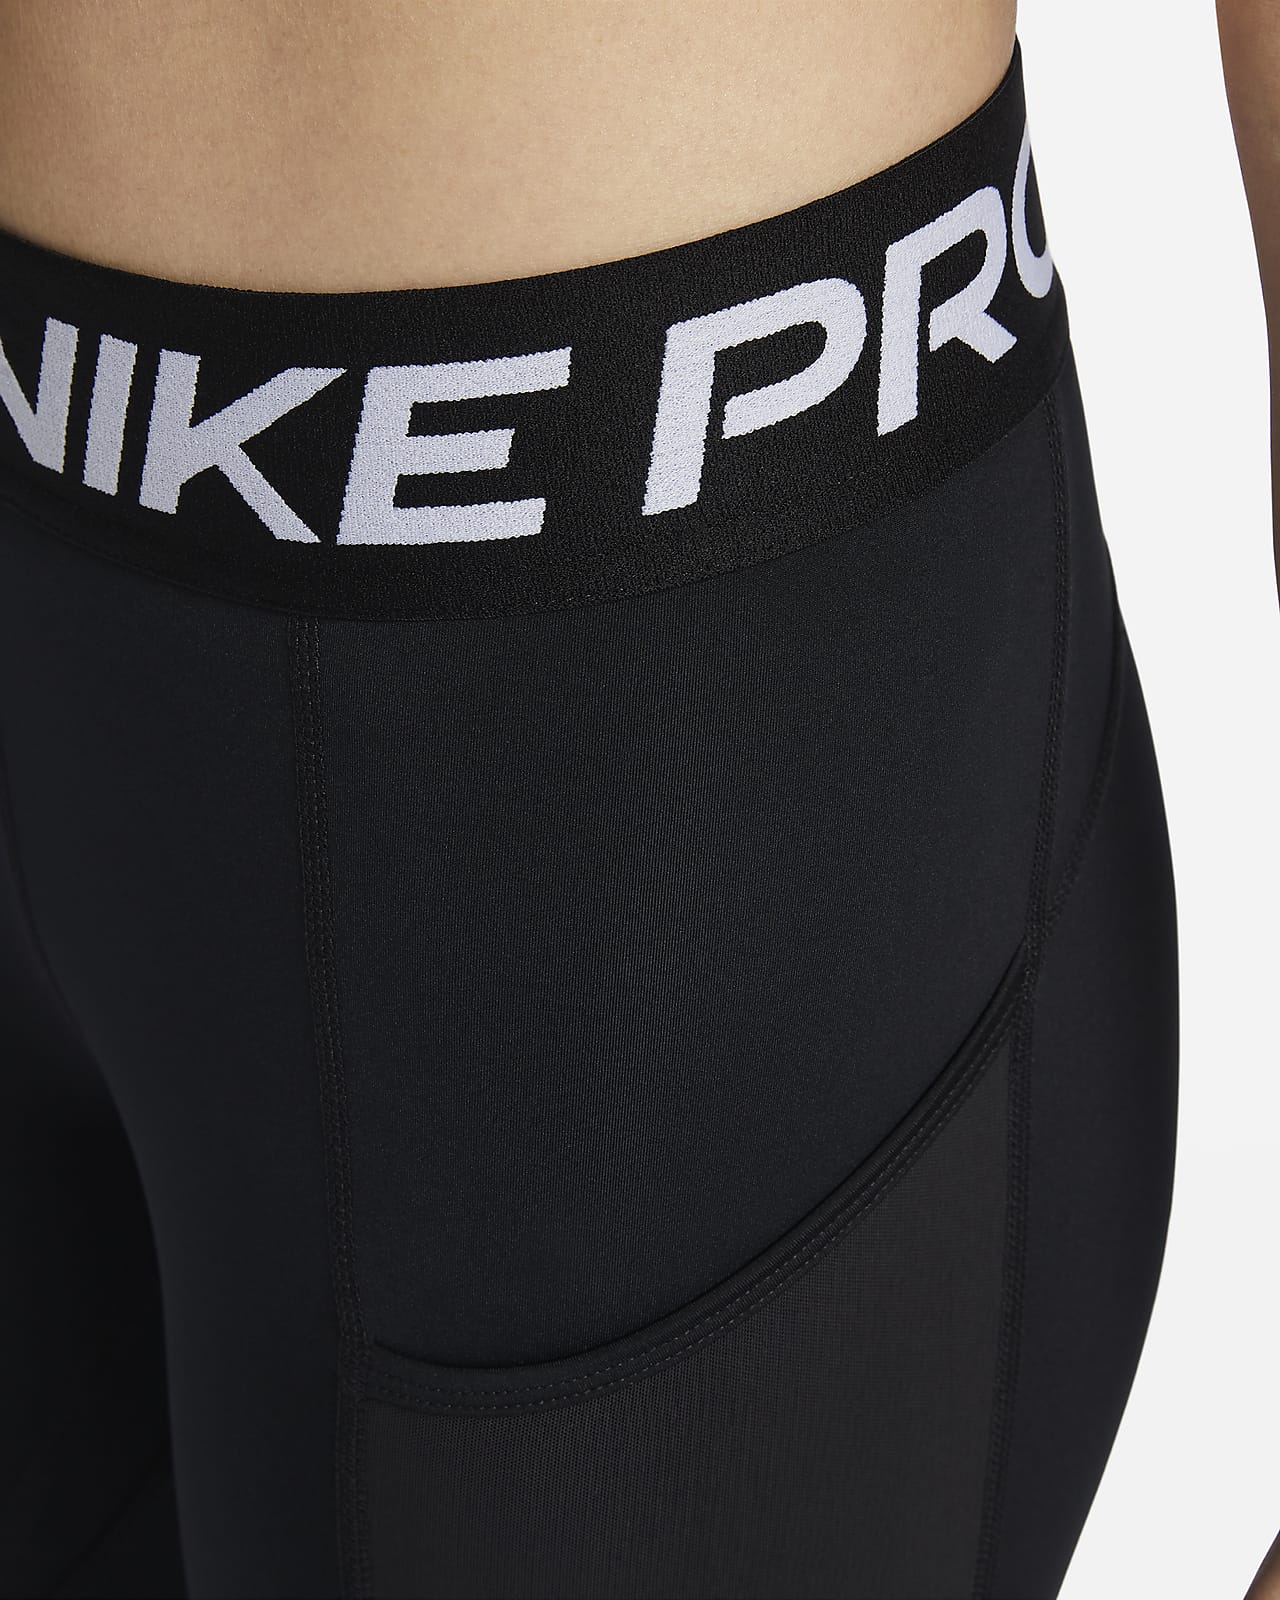 Women's leggings Nike Pro Dri-Fit 365 Mid-Rise 7/8 Tight - black/white, Tennis Zone